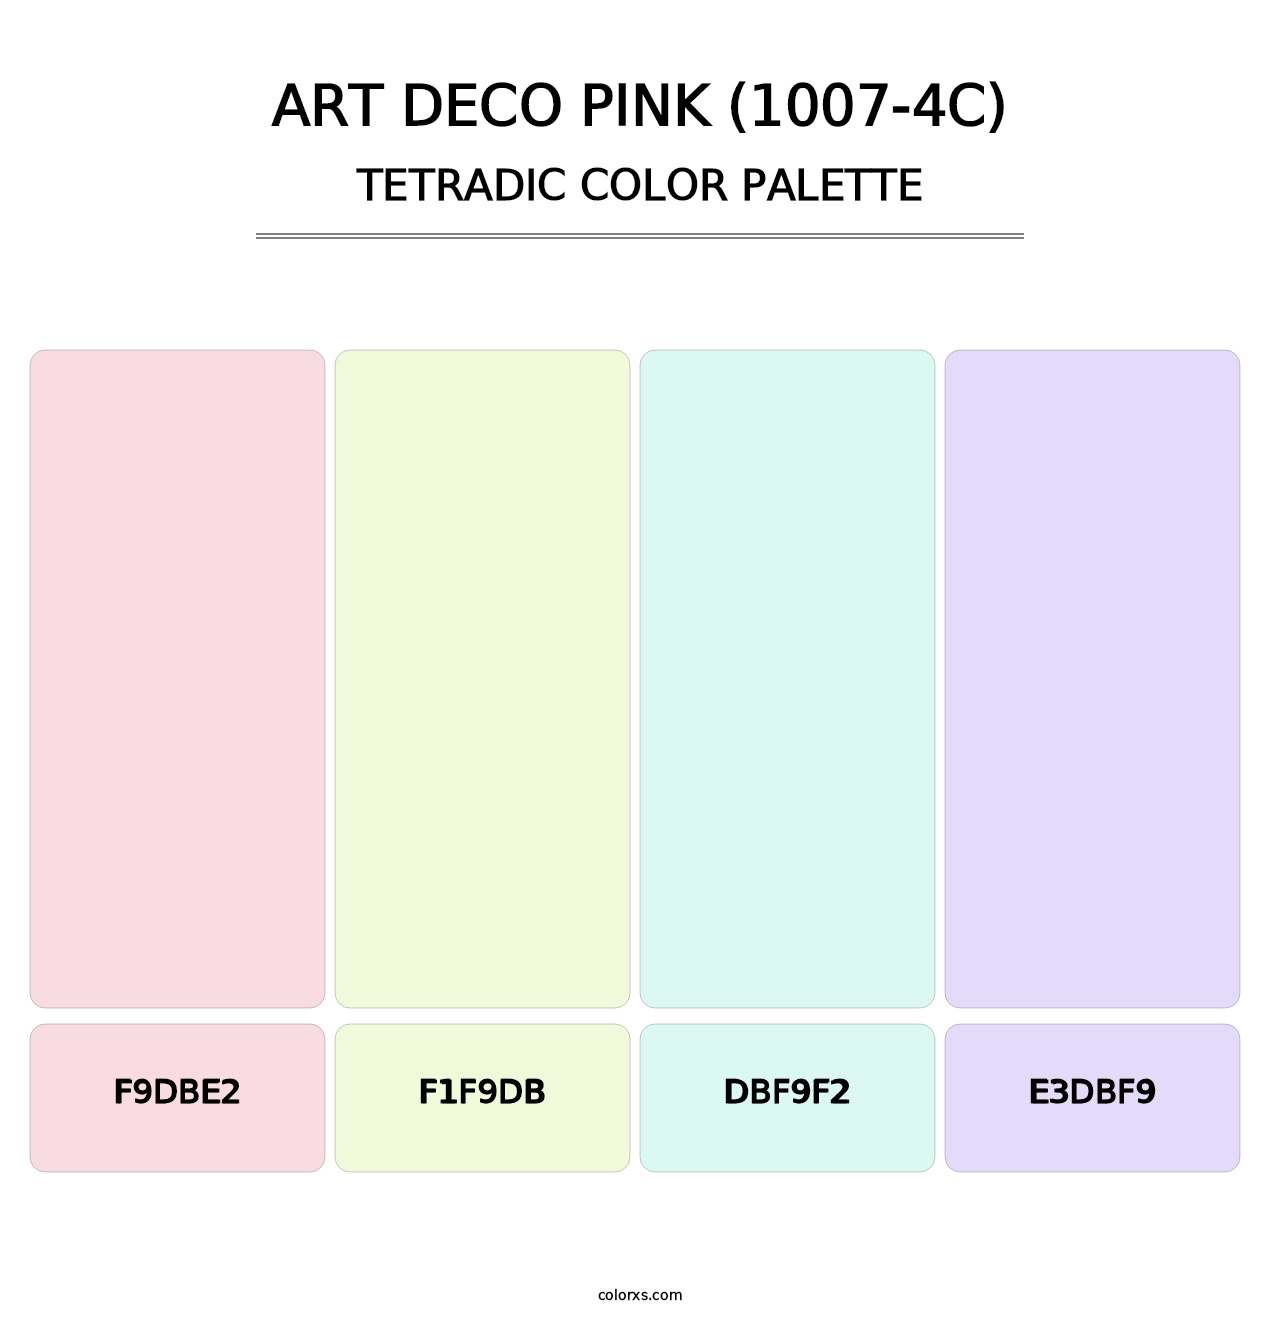 Art Deco Pink (1007-4C) - Tetradic Color Palette